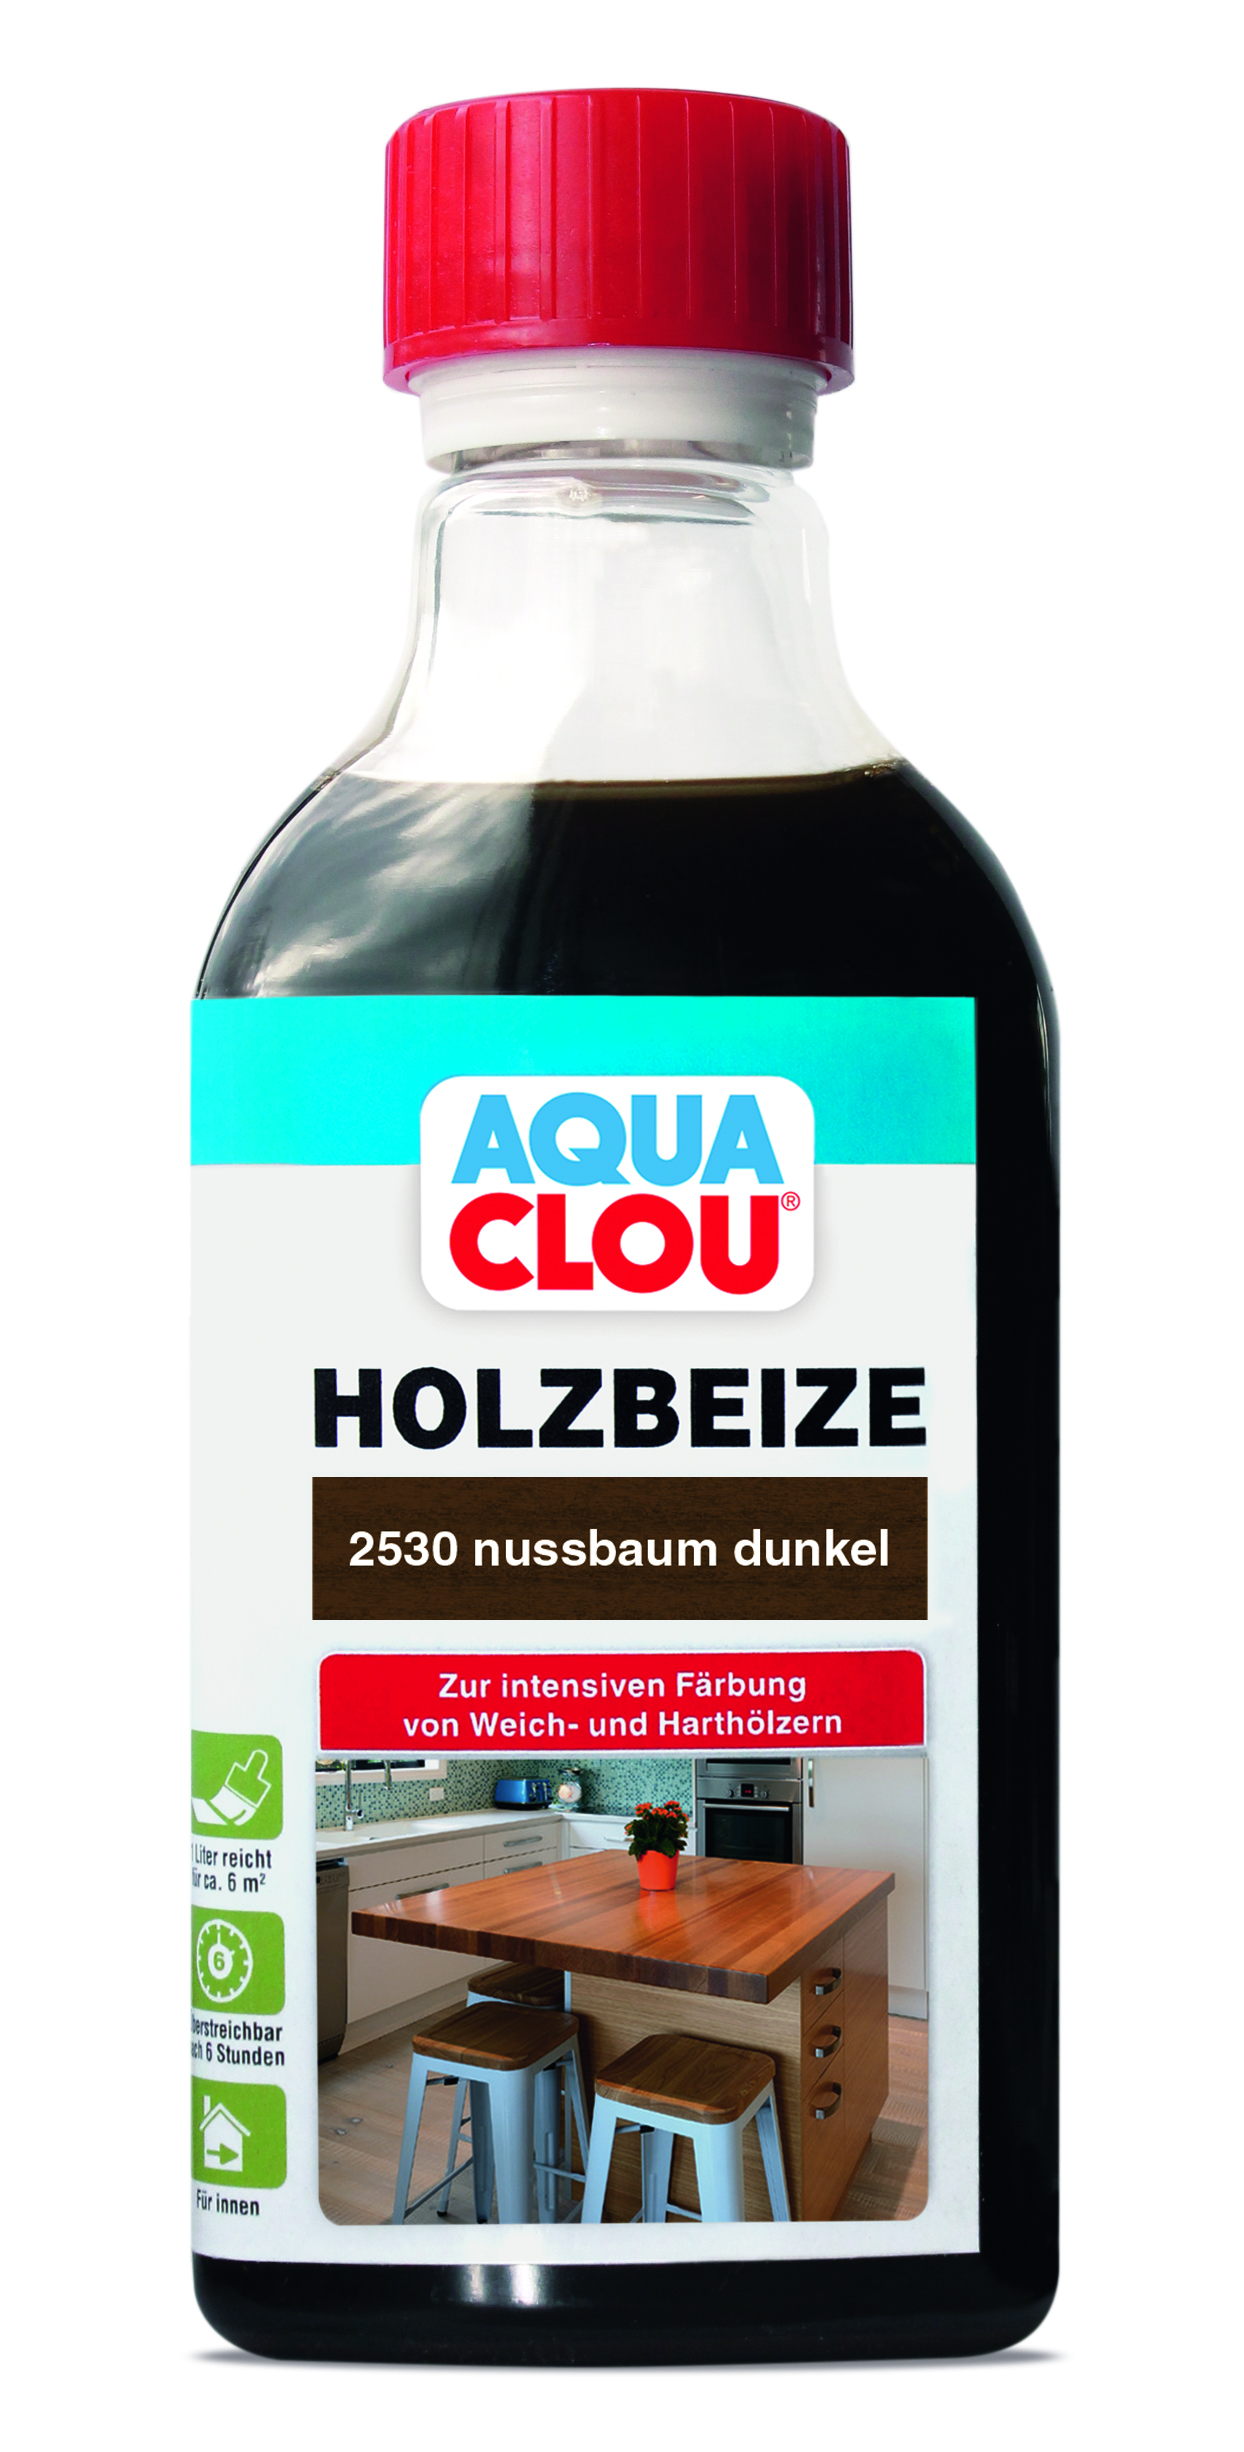 AQUA CLOU Holzbeize B11, 250 ml - 2530 Nussbaum dunkel